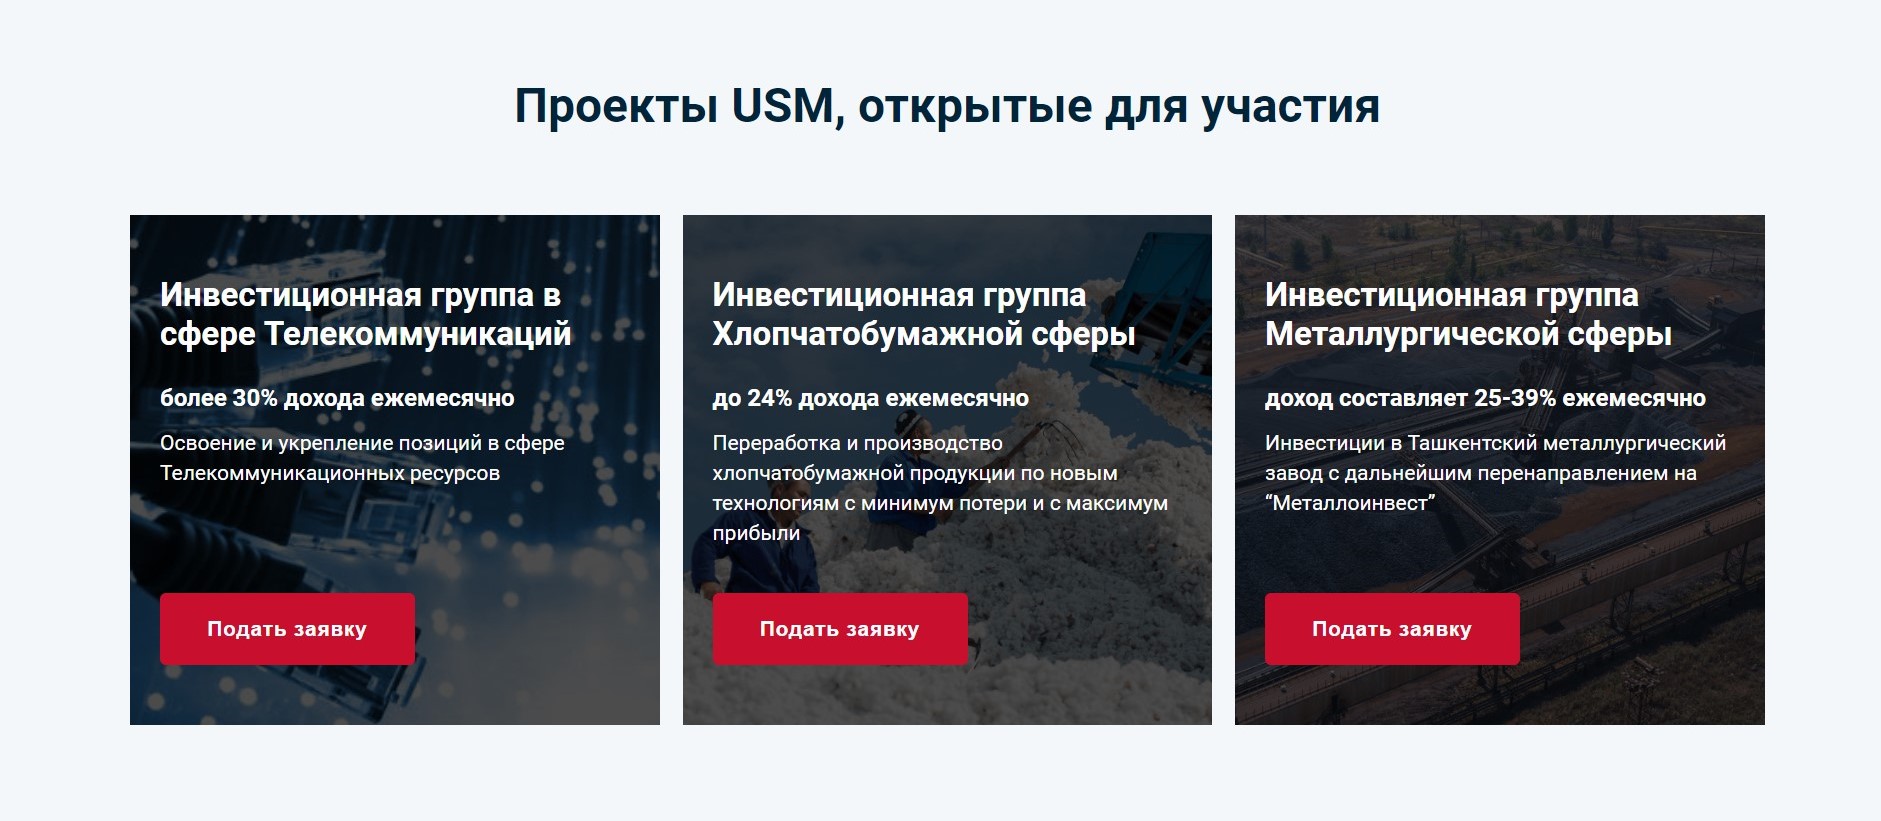 Как мошенники используют USM HOLDINGS и имя Алишера Усманова: разоблачение лжепроекта